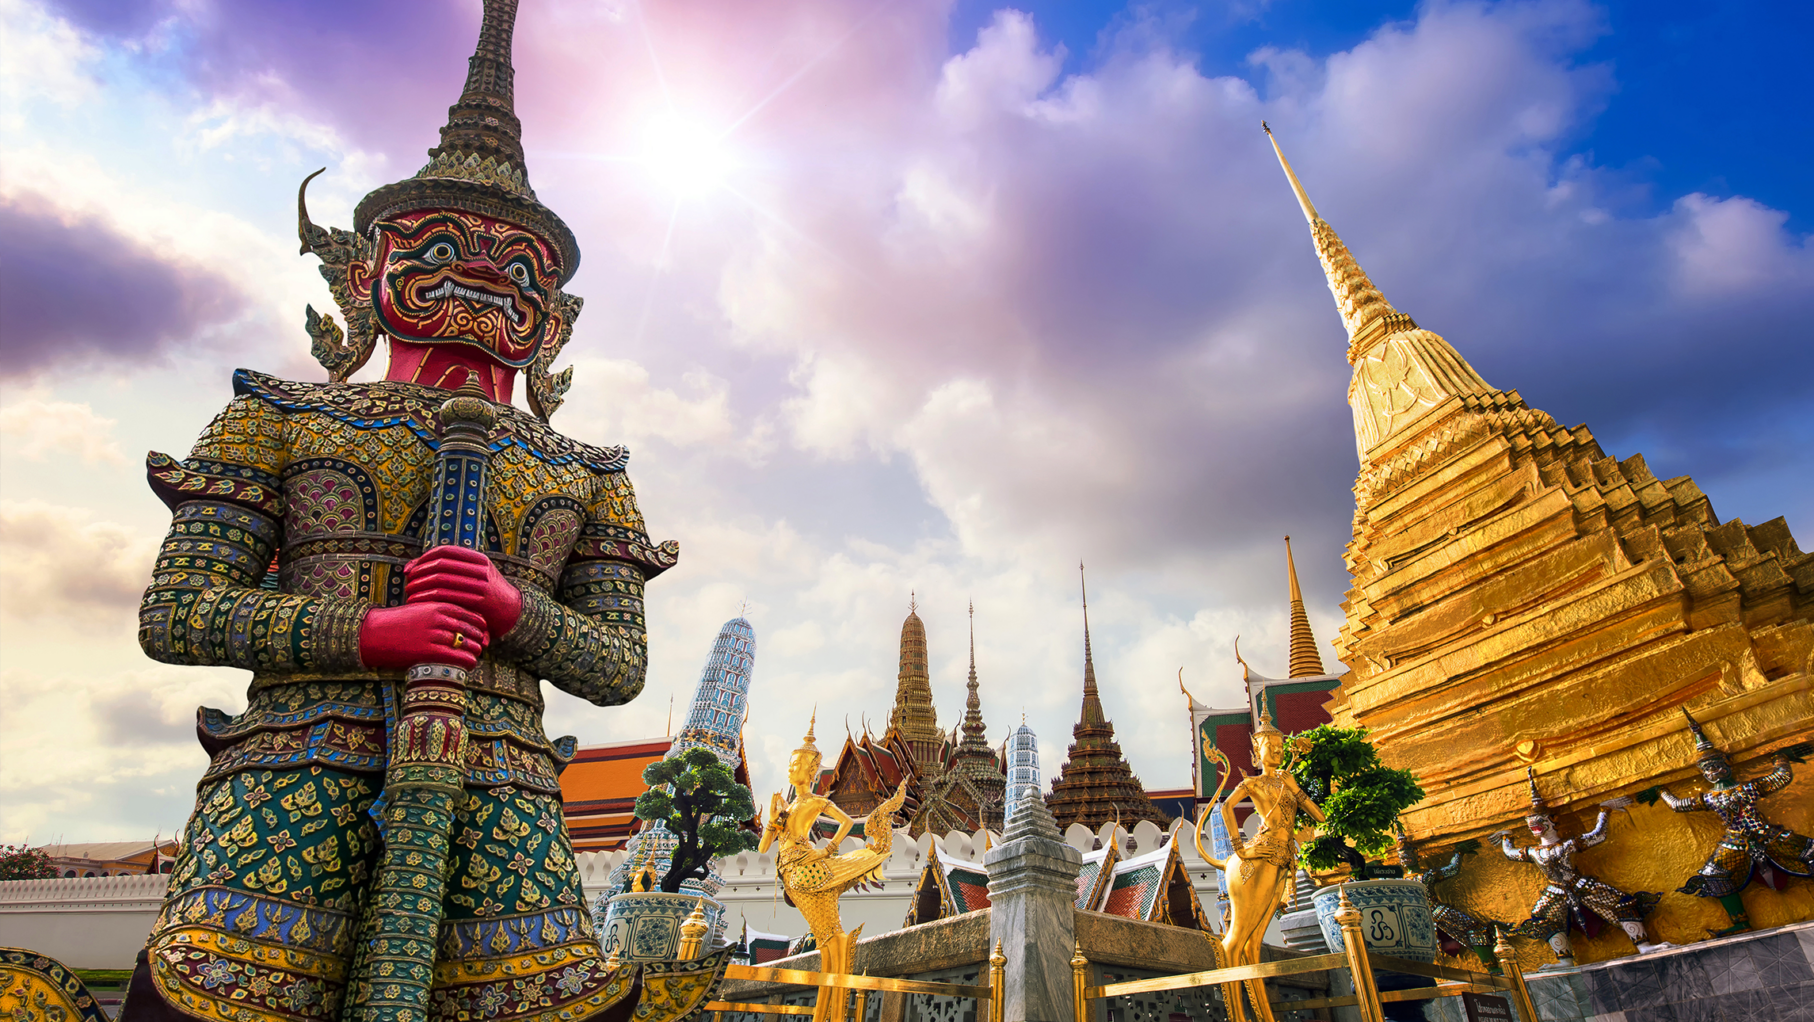 A statue and pagoda in Bangkok